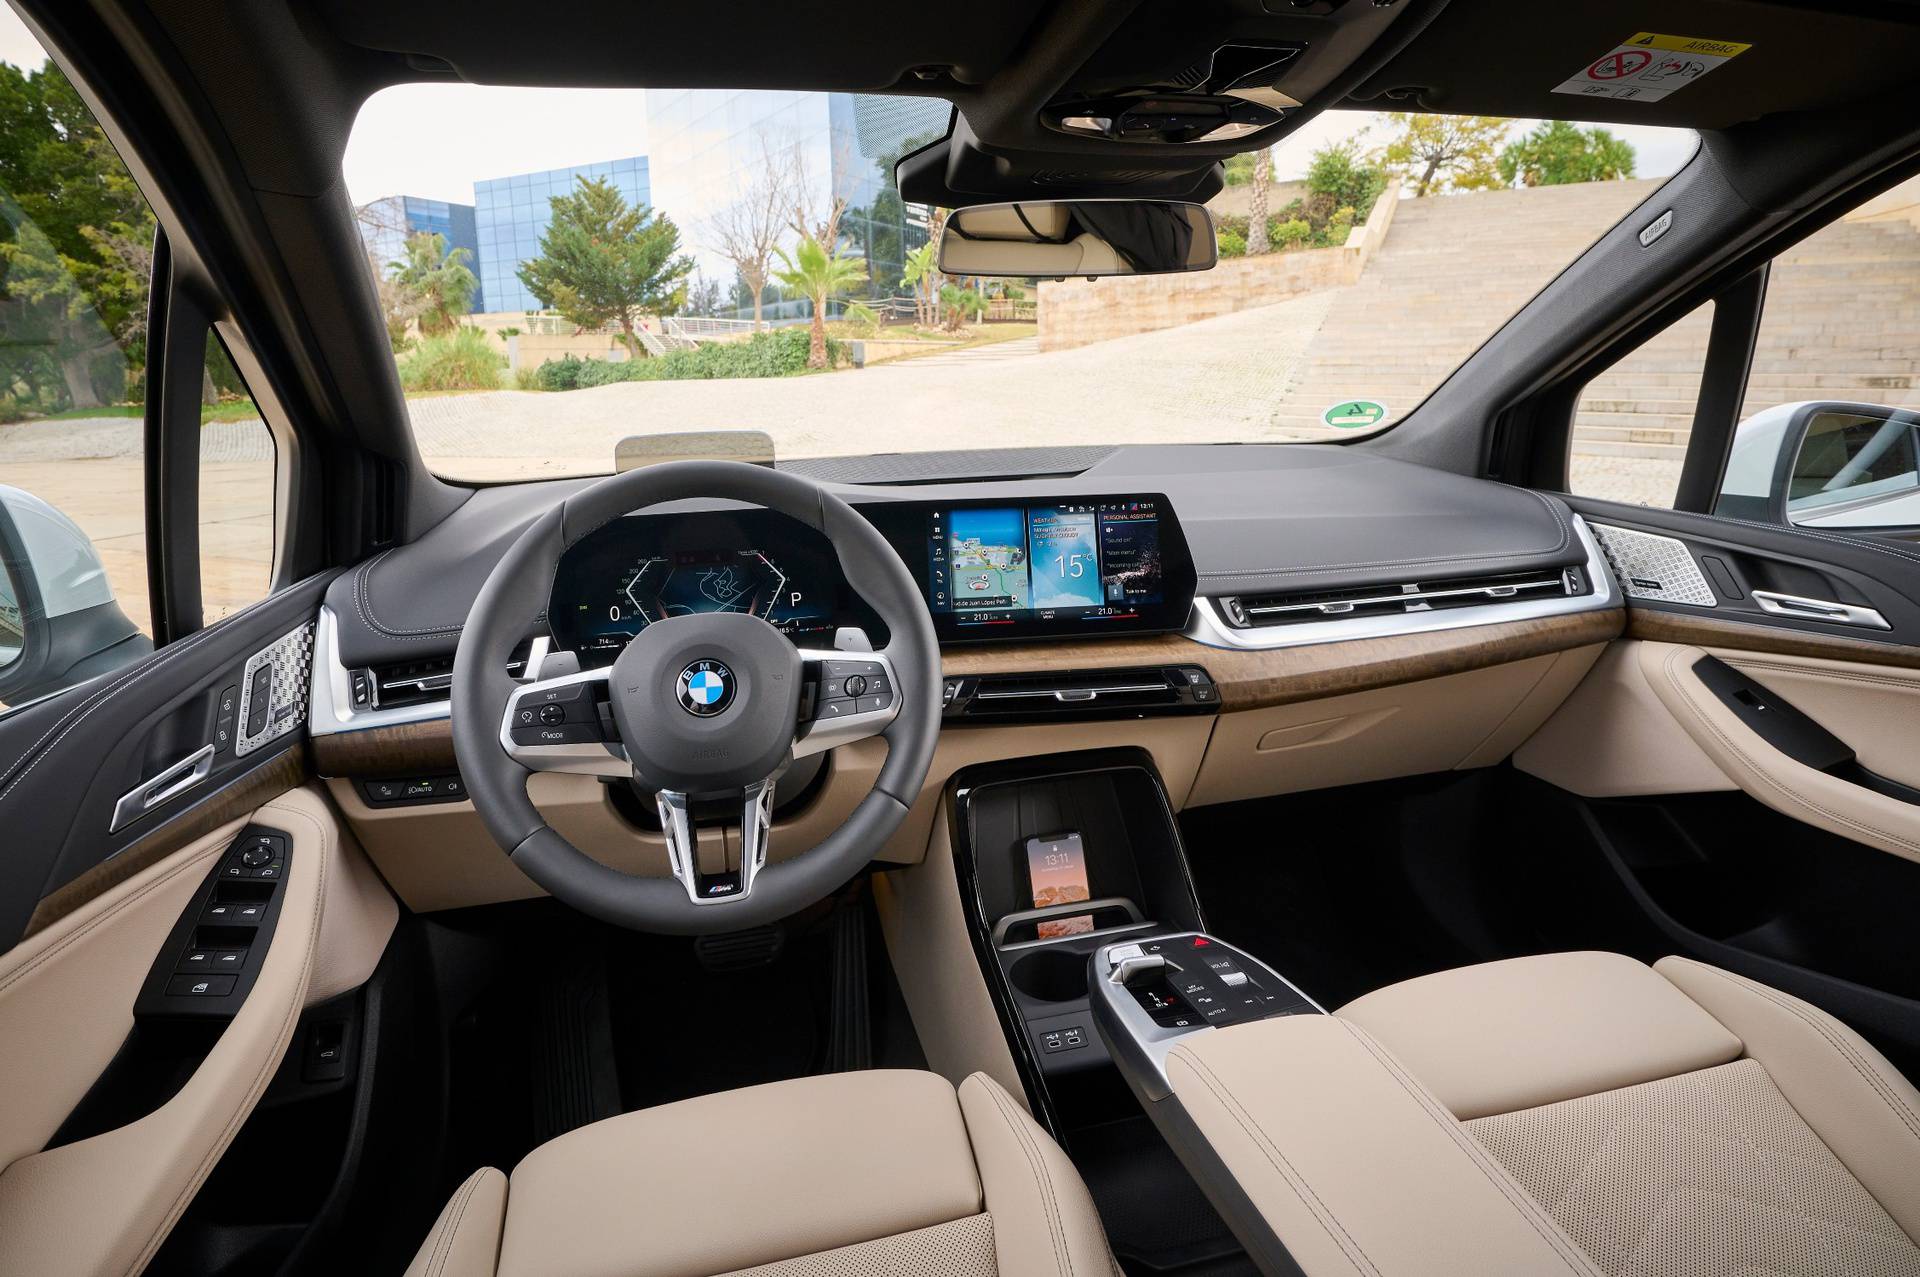 BMW Exclusive M paket uz super uštede i bogatu opremu za sportski osjećaj u vožnji